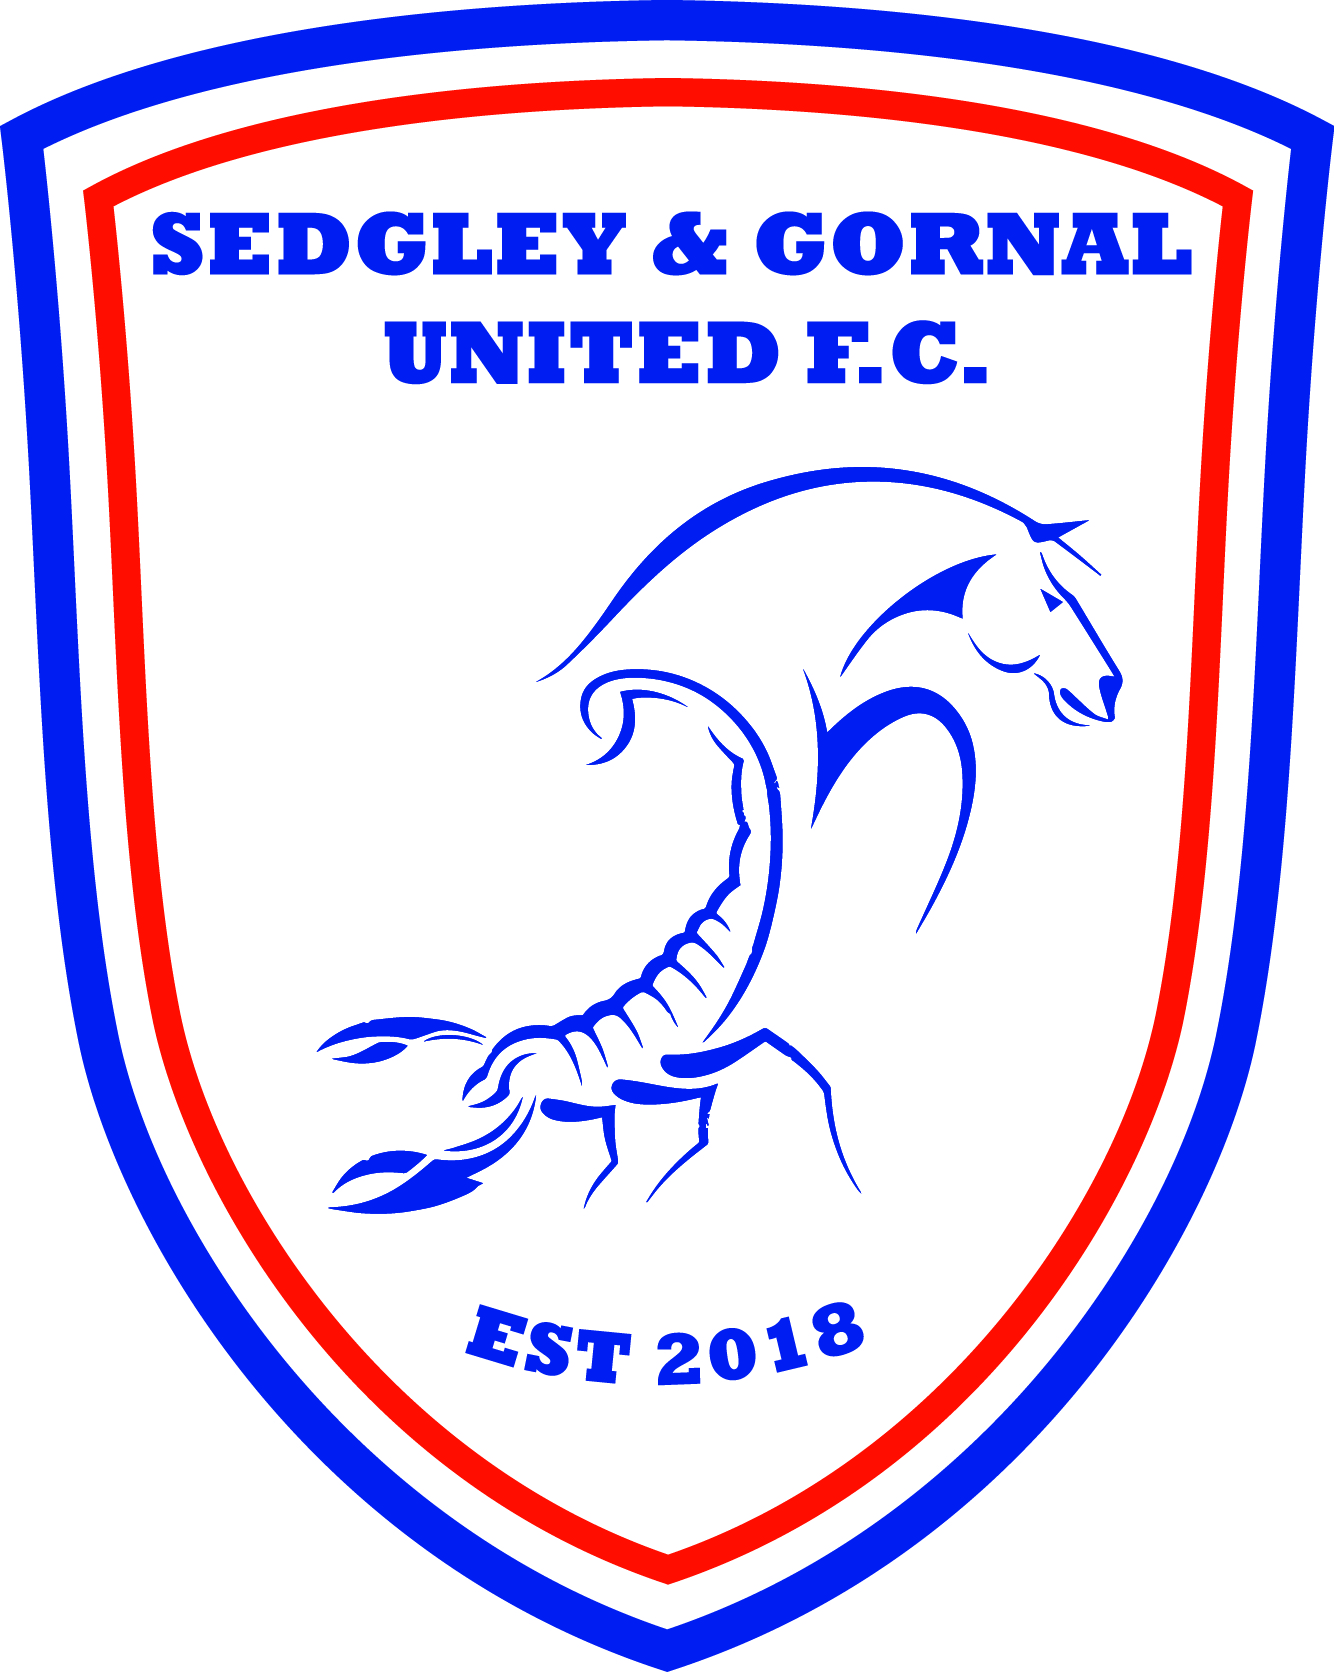 Sedgley & Gornal United FC Constitution 